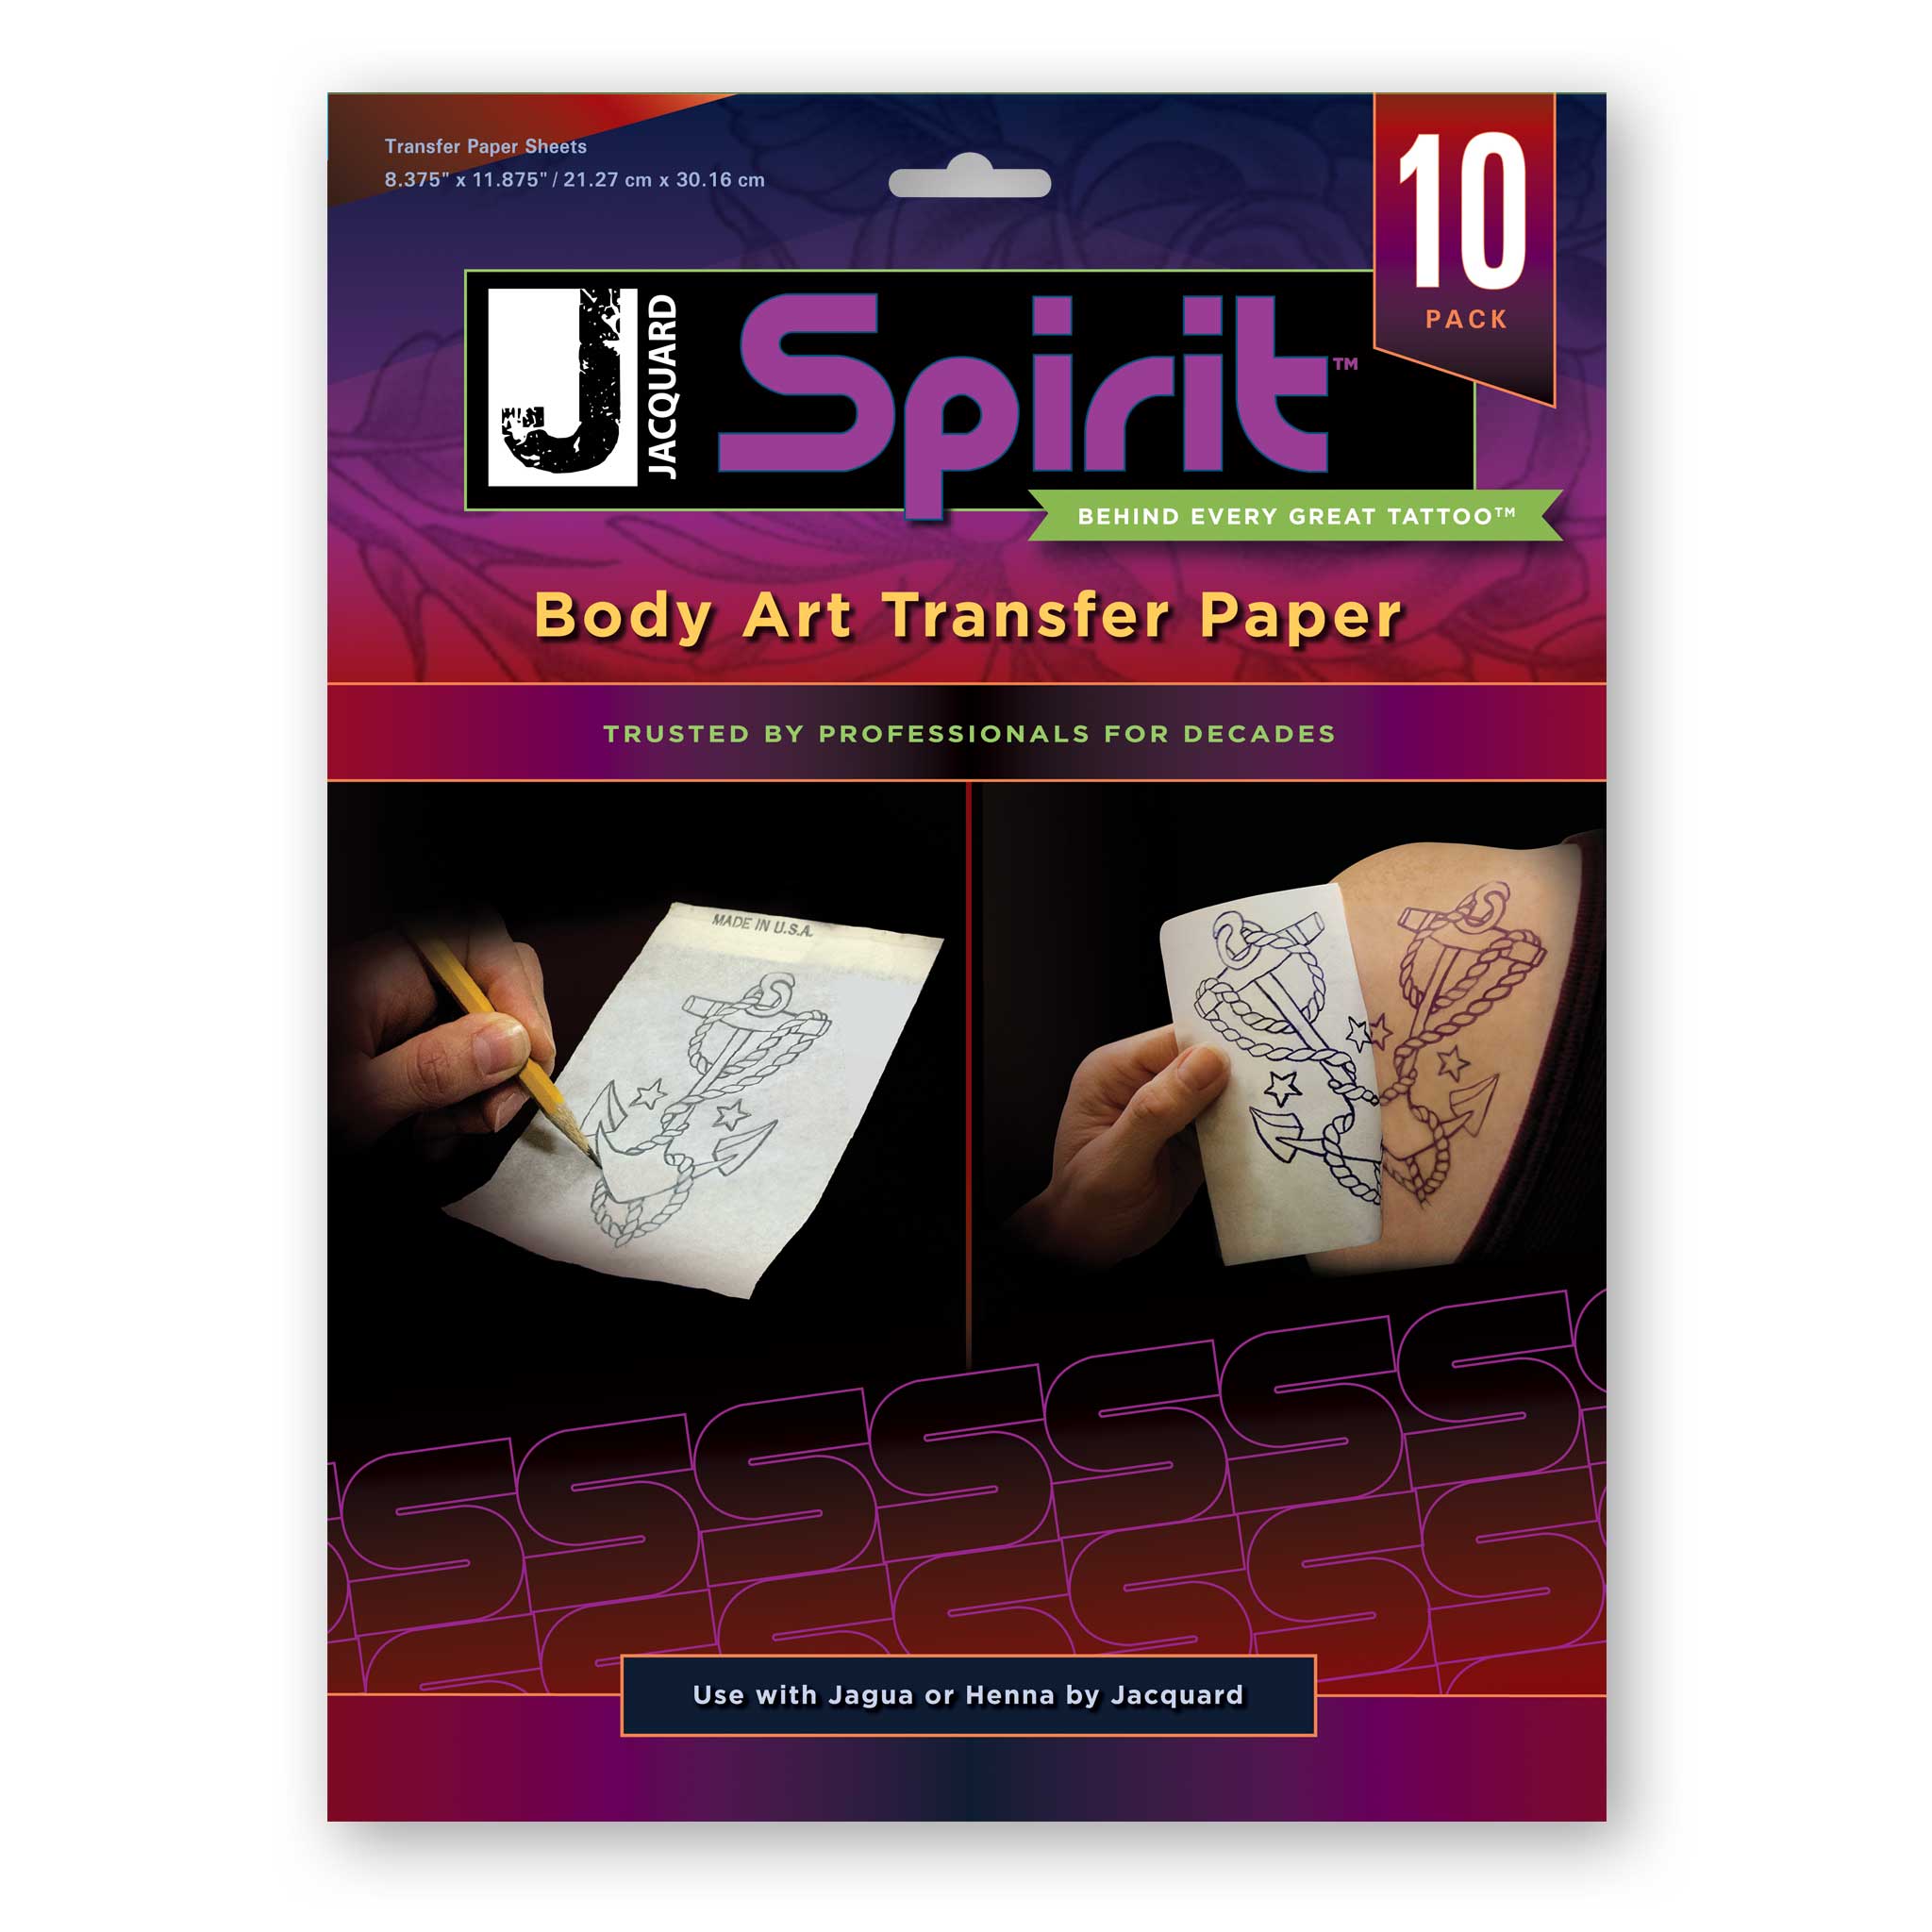 Body Art Transfer Paper (10-Pack)